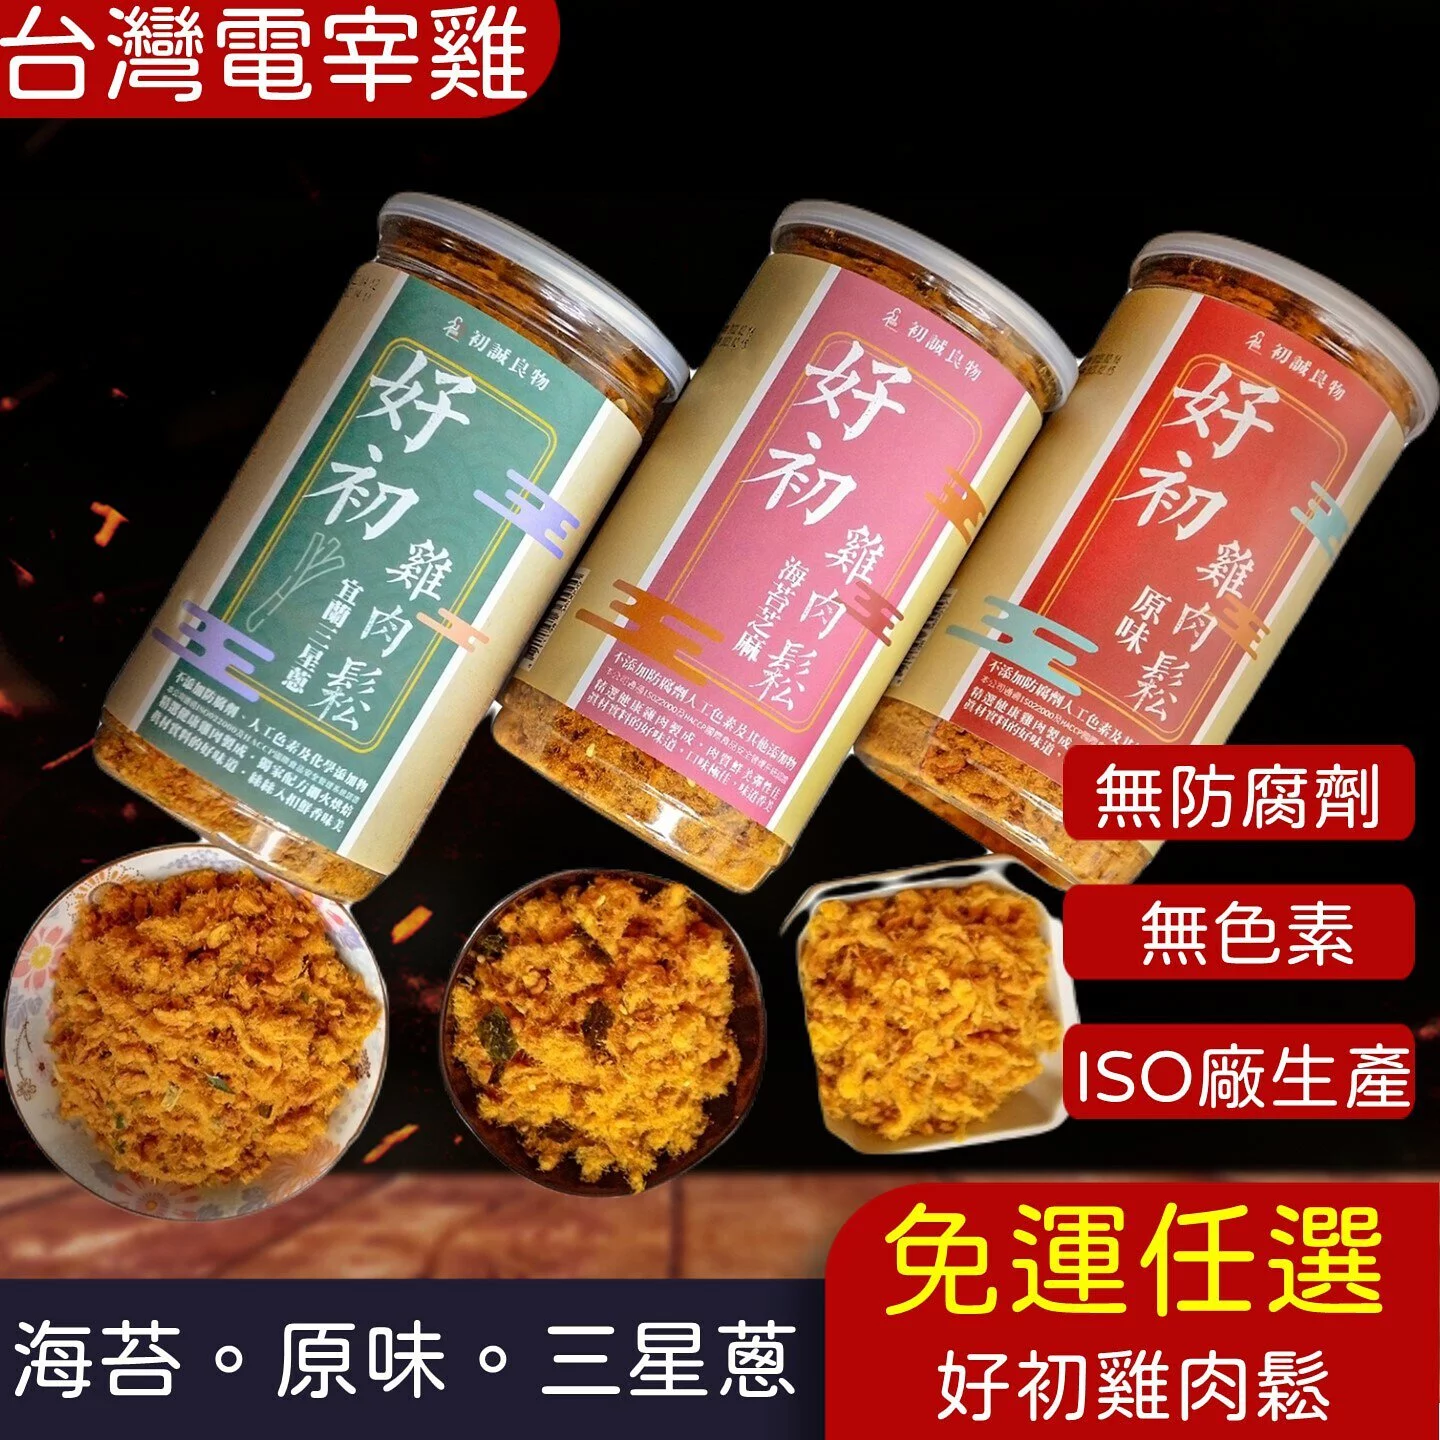 (免運多組)ISO廠生產【好初雞肉鬆】三星蔥.海苔.原味(200g/罐)(20罐)🌞90B025